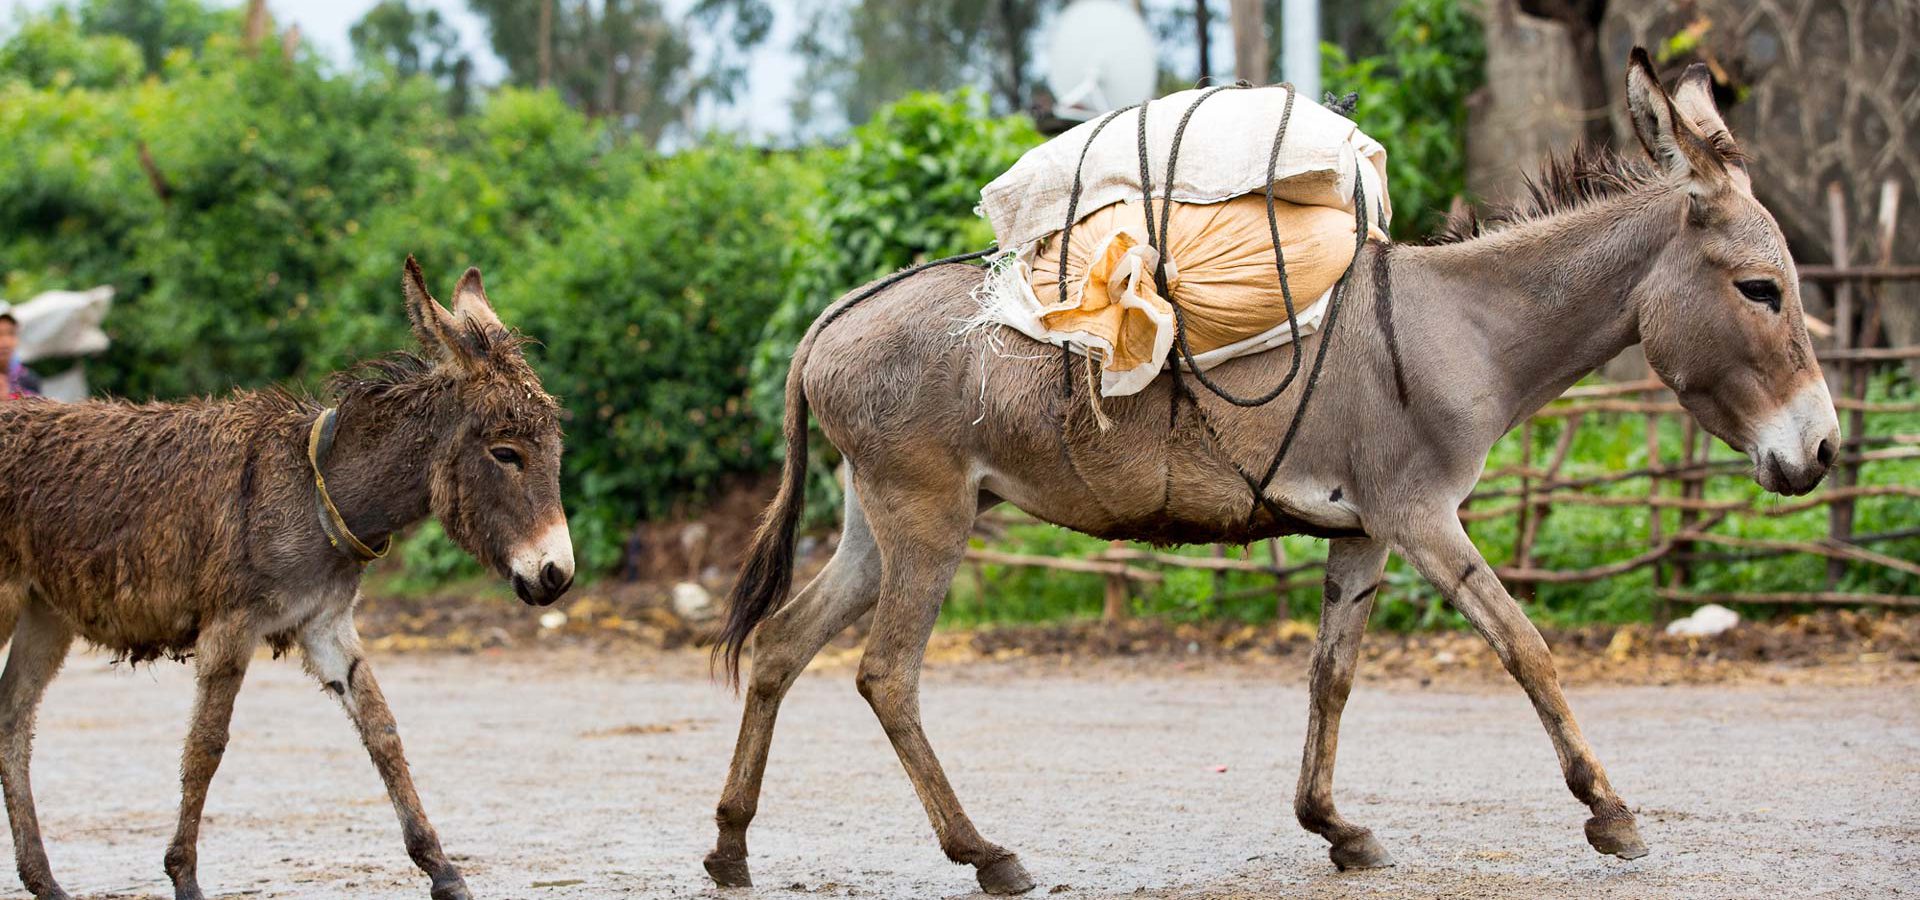 Two donkeys crossing a road